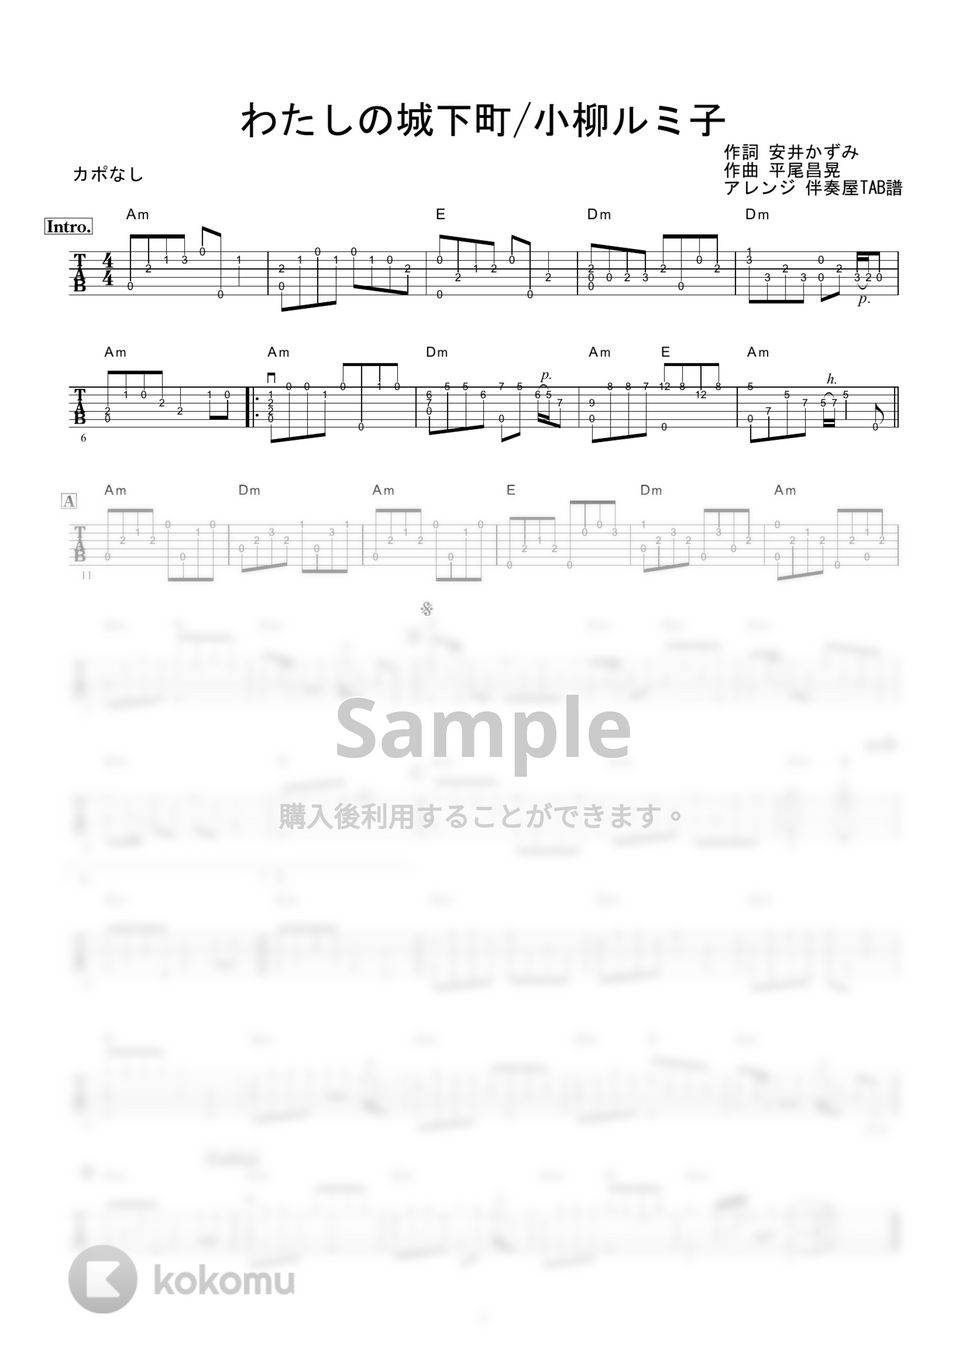 小柳ルミ子 - わたしの城下町 (ギター伴奏/イントロ・間奏ソロギター) by 伴奏屋TAB譜